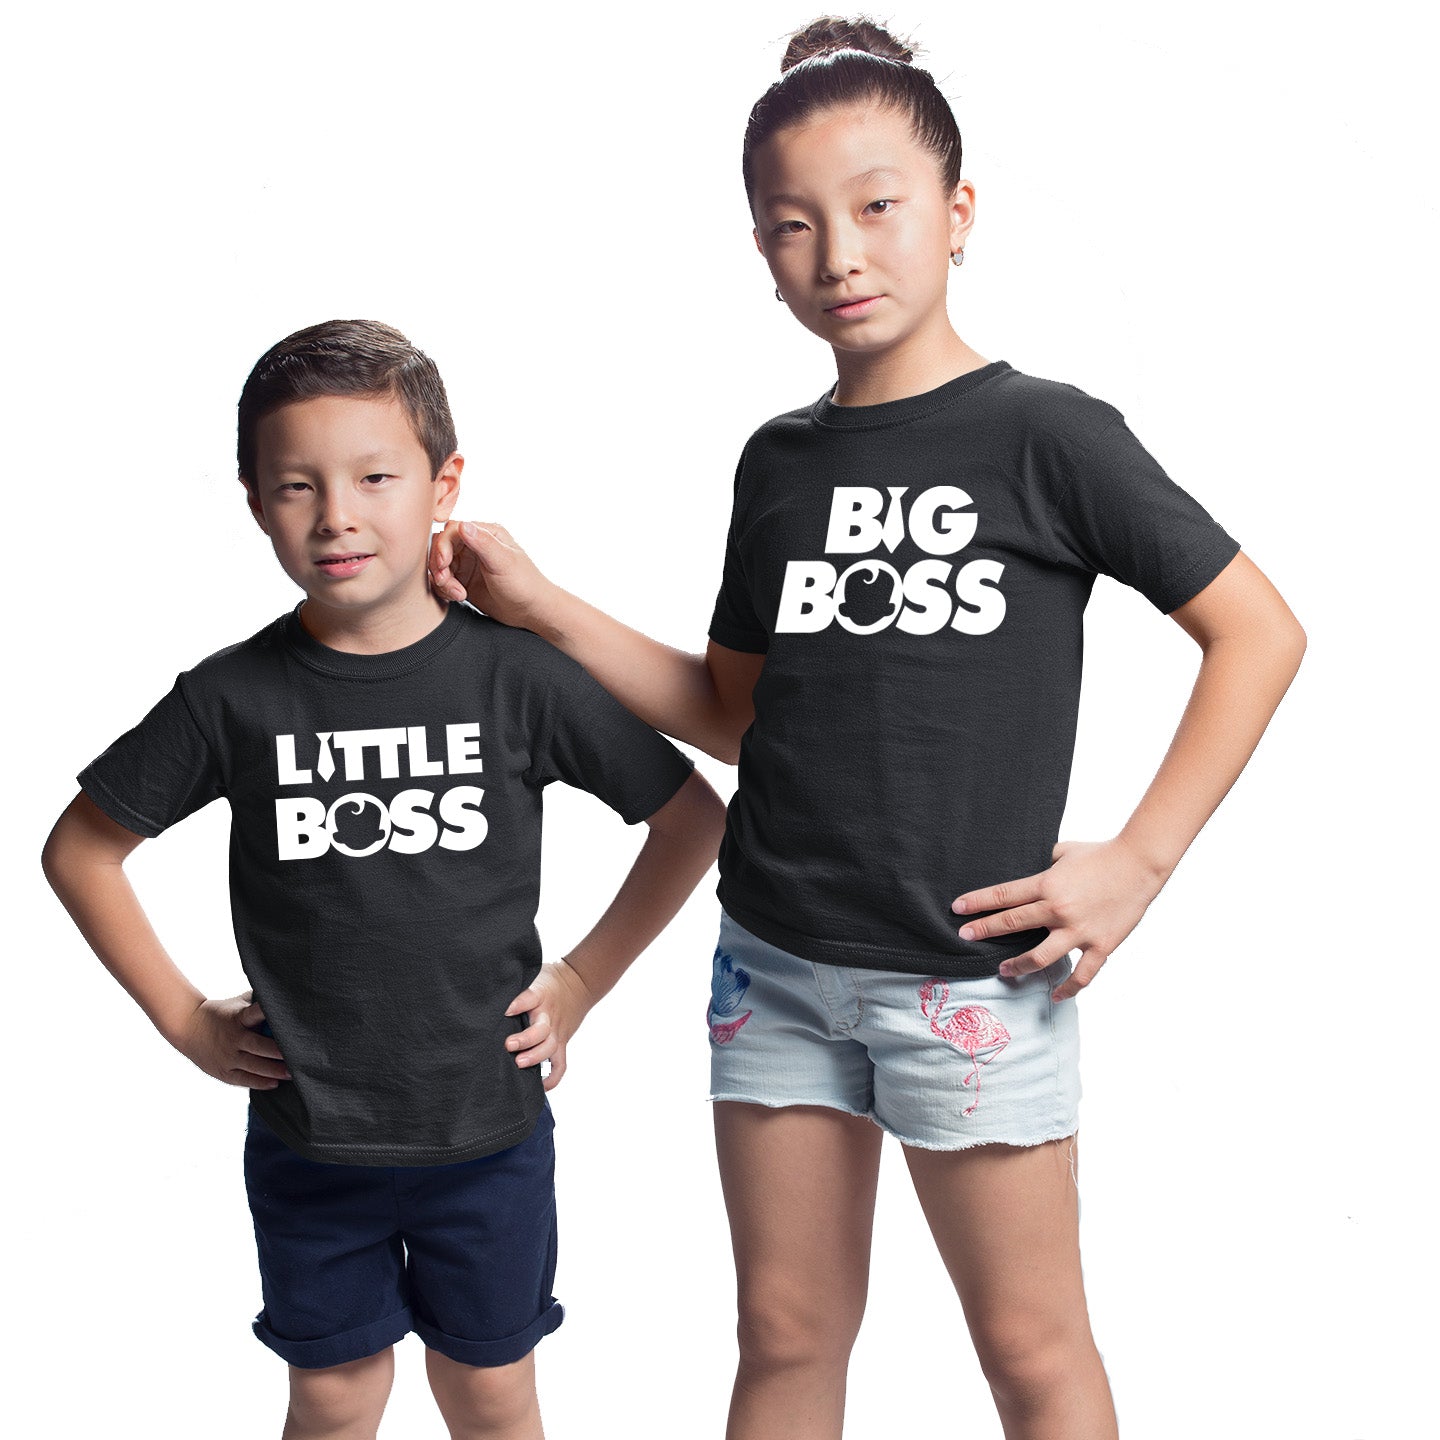 big boss little boss t shirts